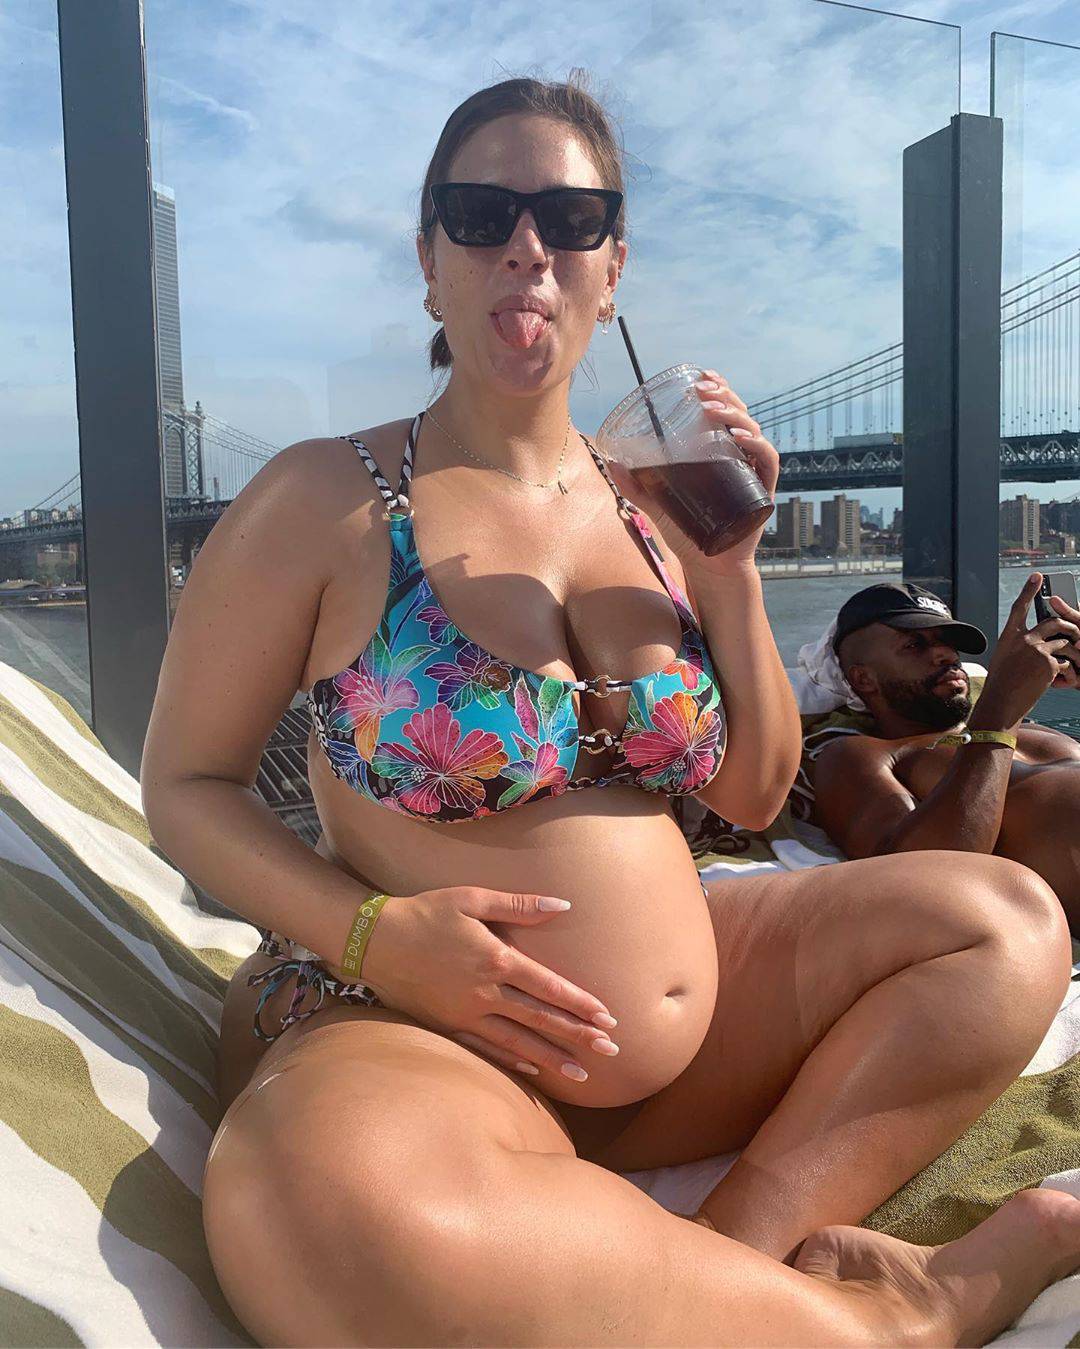 Plus size Ashley uživa na plaži: Pokazala je trudnički trbuščić